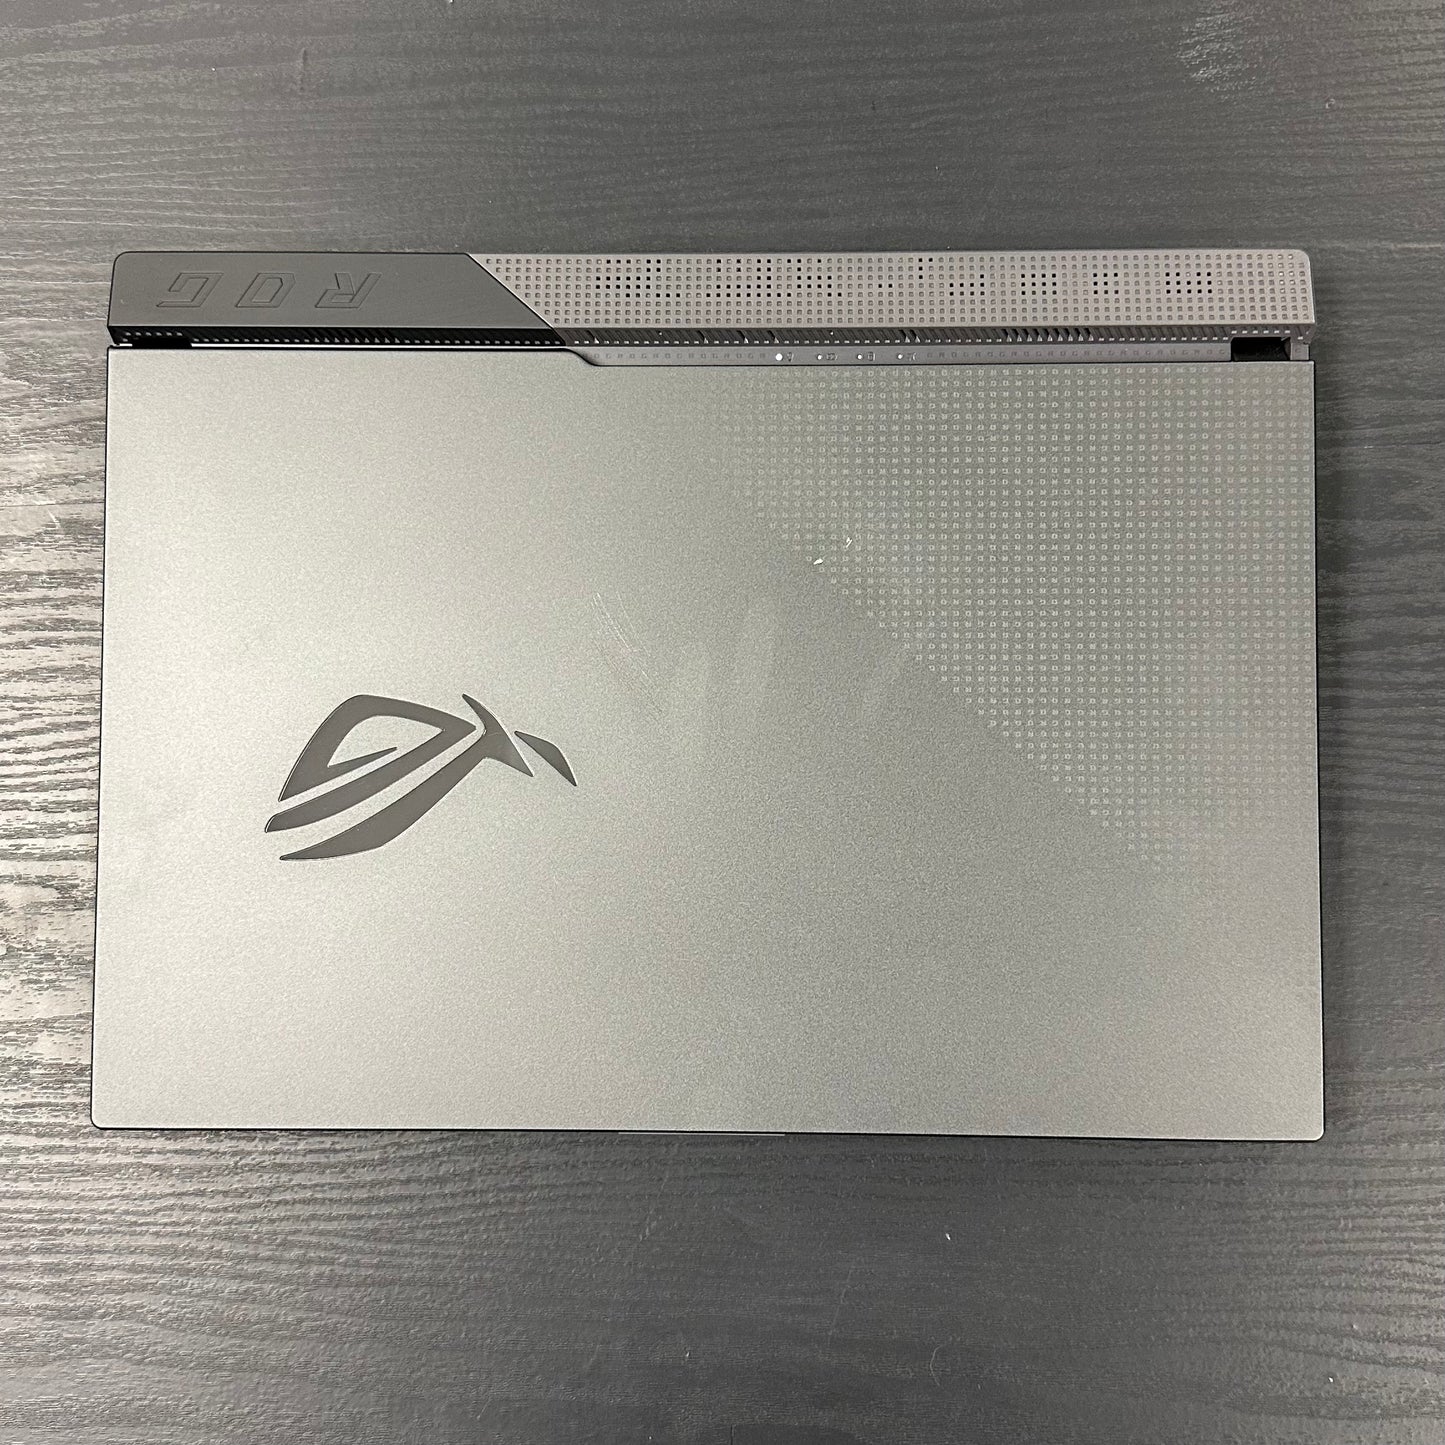 ROG STRIX 15.6” 300Hz Gaming Laptop